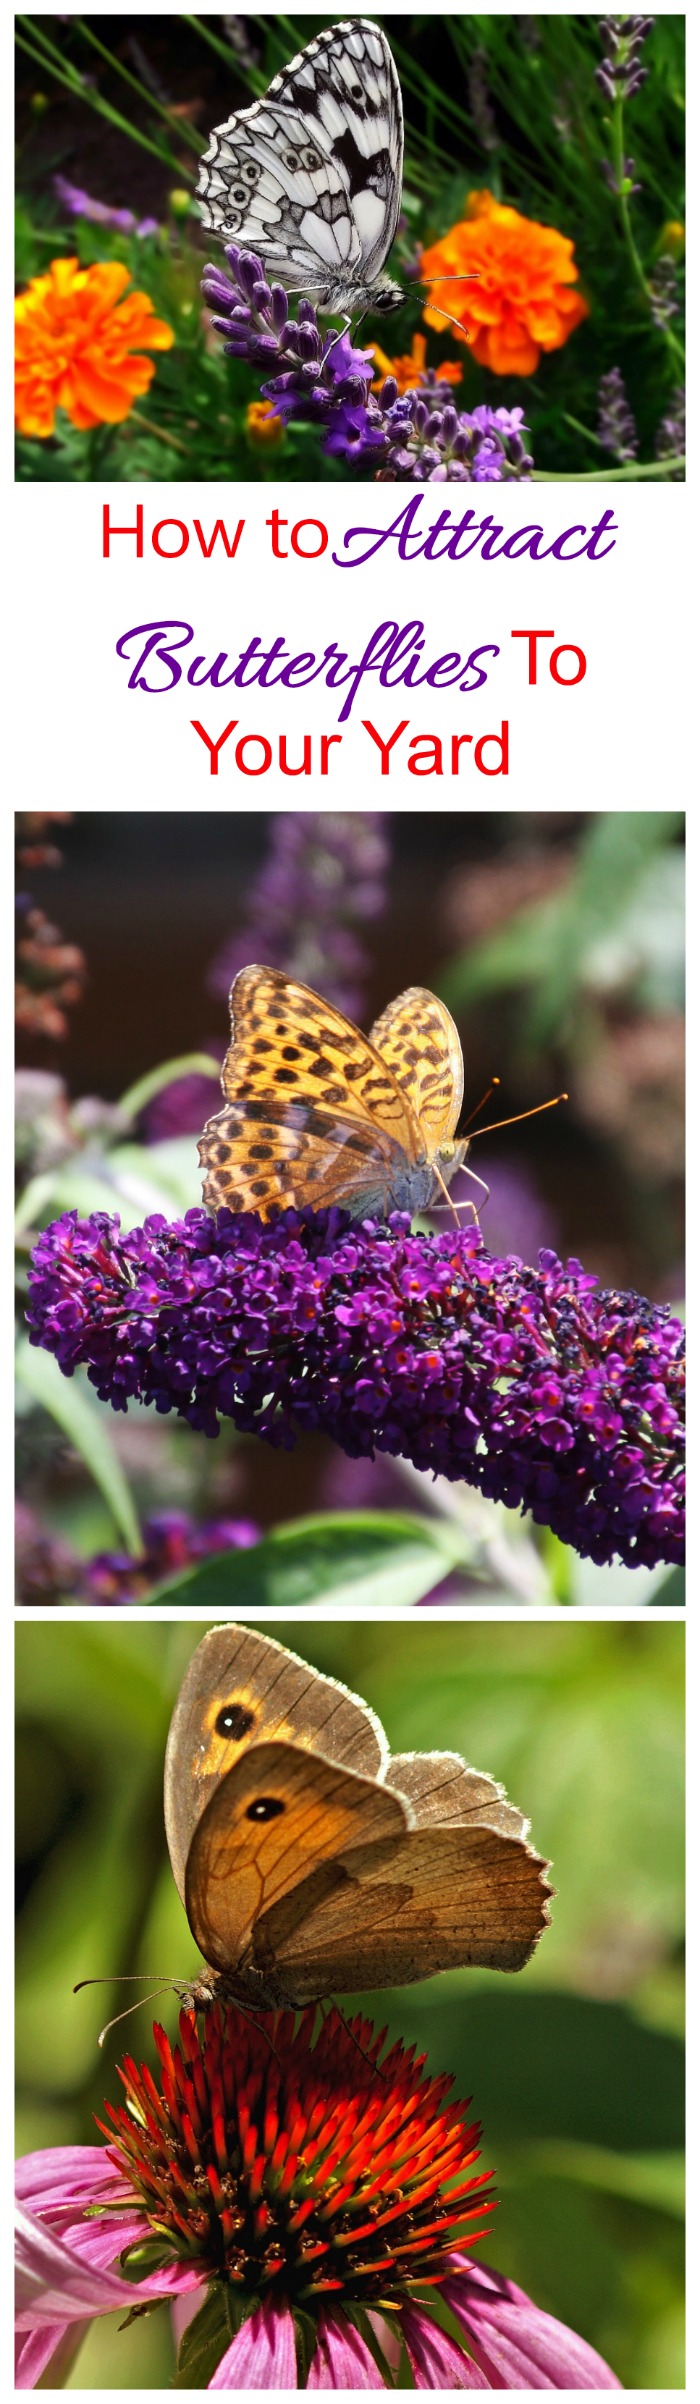 Привличане на пеперуди - съвети за привличане на пеперуди в двора като магнит